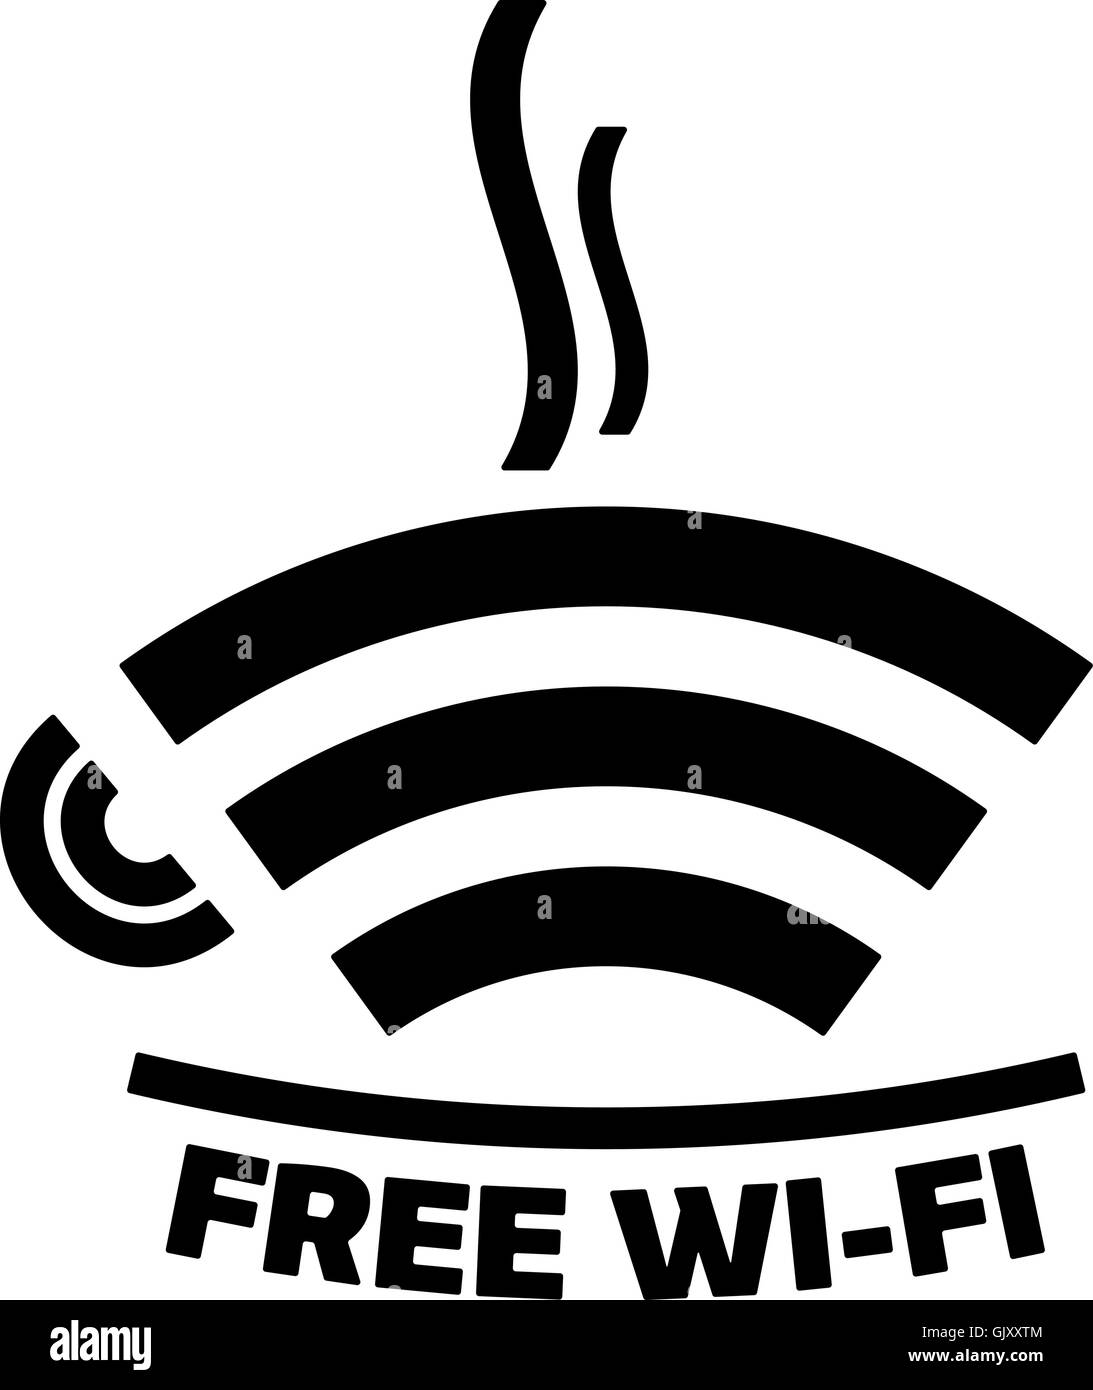 Wi-fi gratuito icono cafe Ilustración del Vector